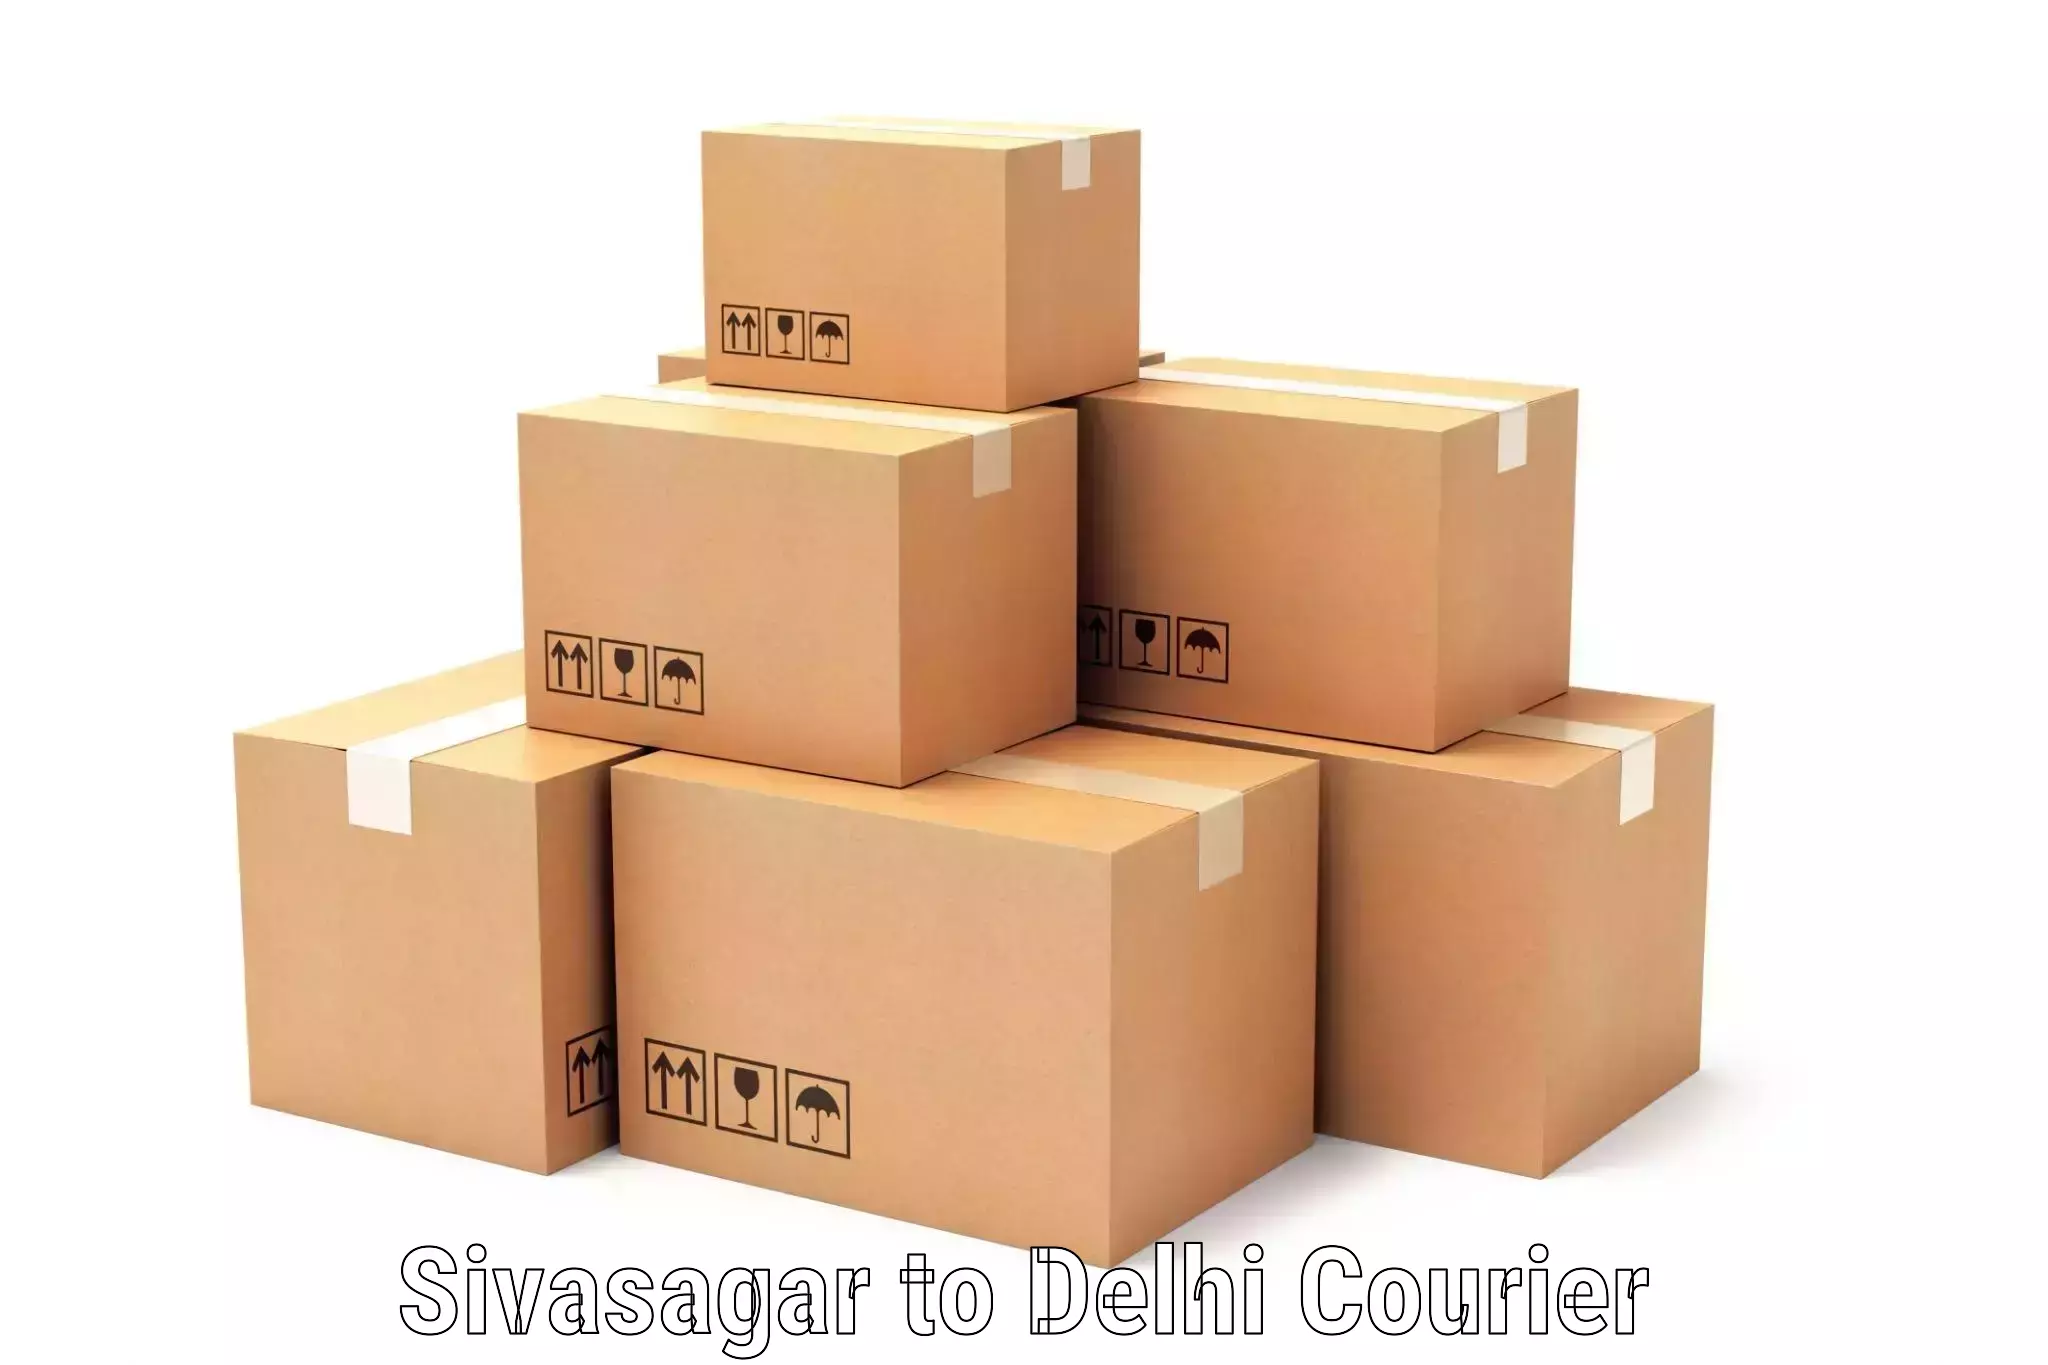 24/7 courier service Sivasagar to Delhi